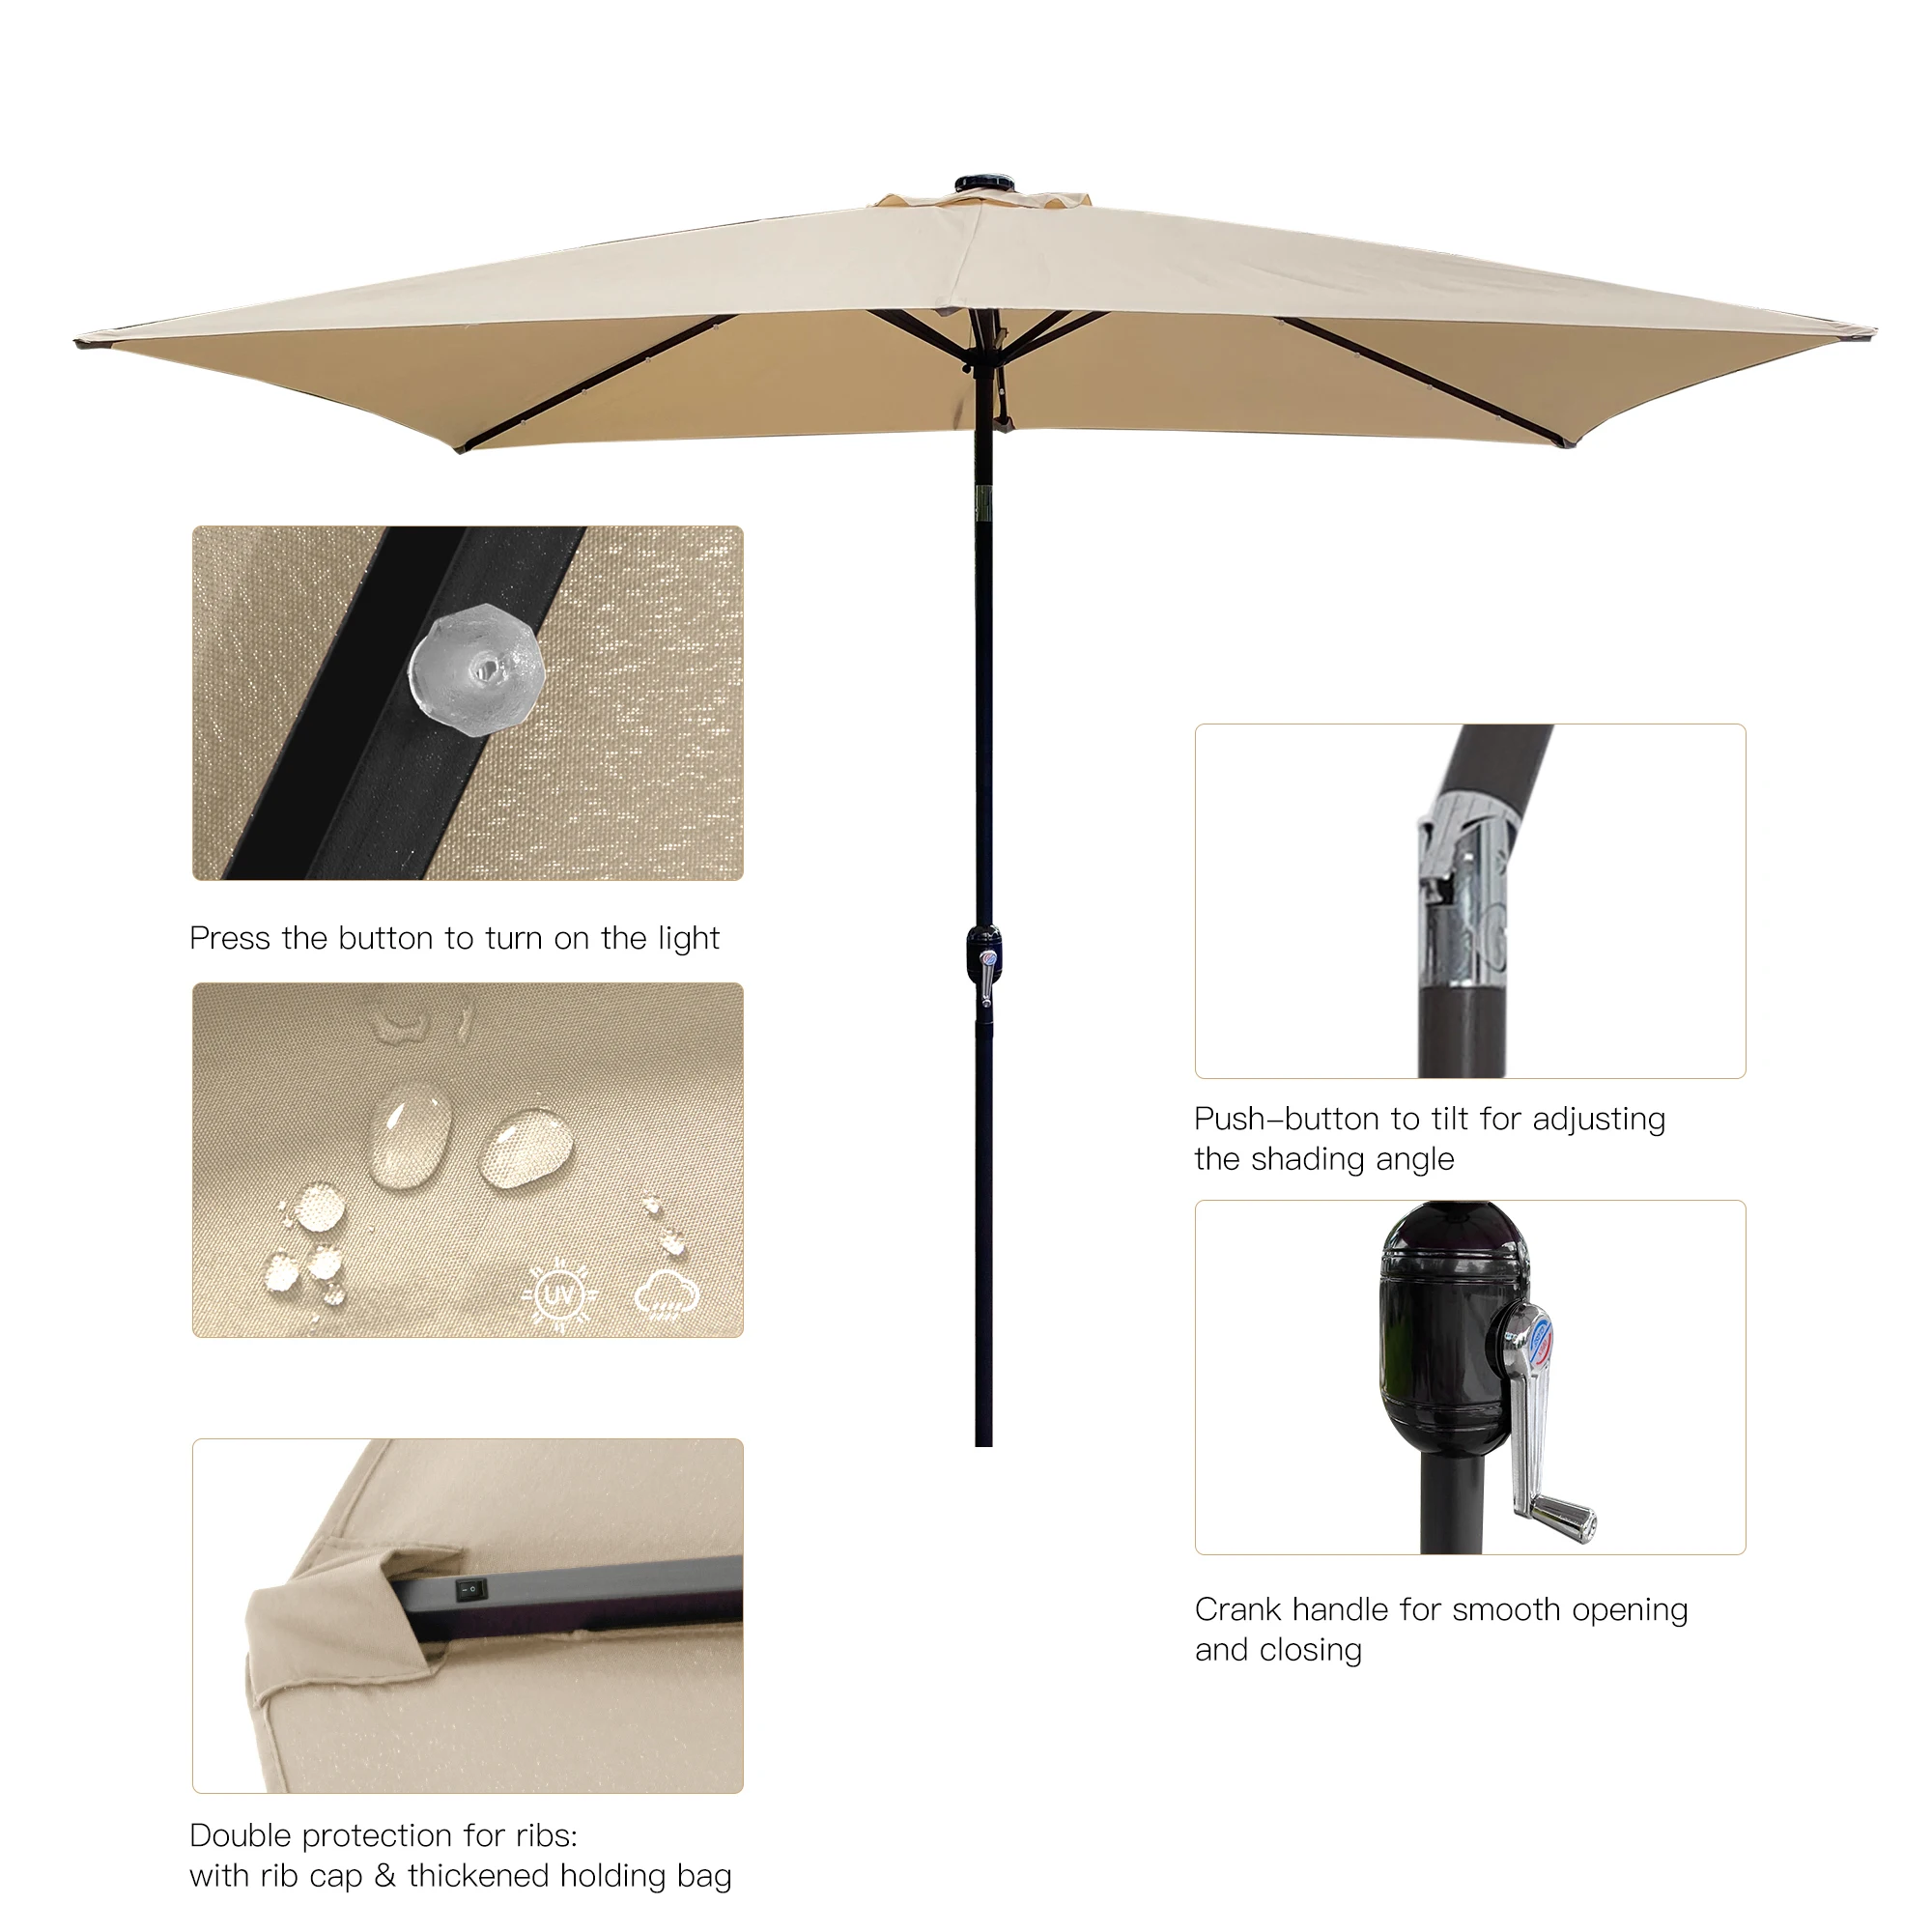 Guarda-chuva exterior da tabela do mercado retangular de 10 pés x 6.5 pés do pátio com inclinação da manivela e do botão do impulso